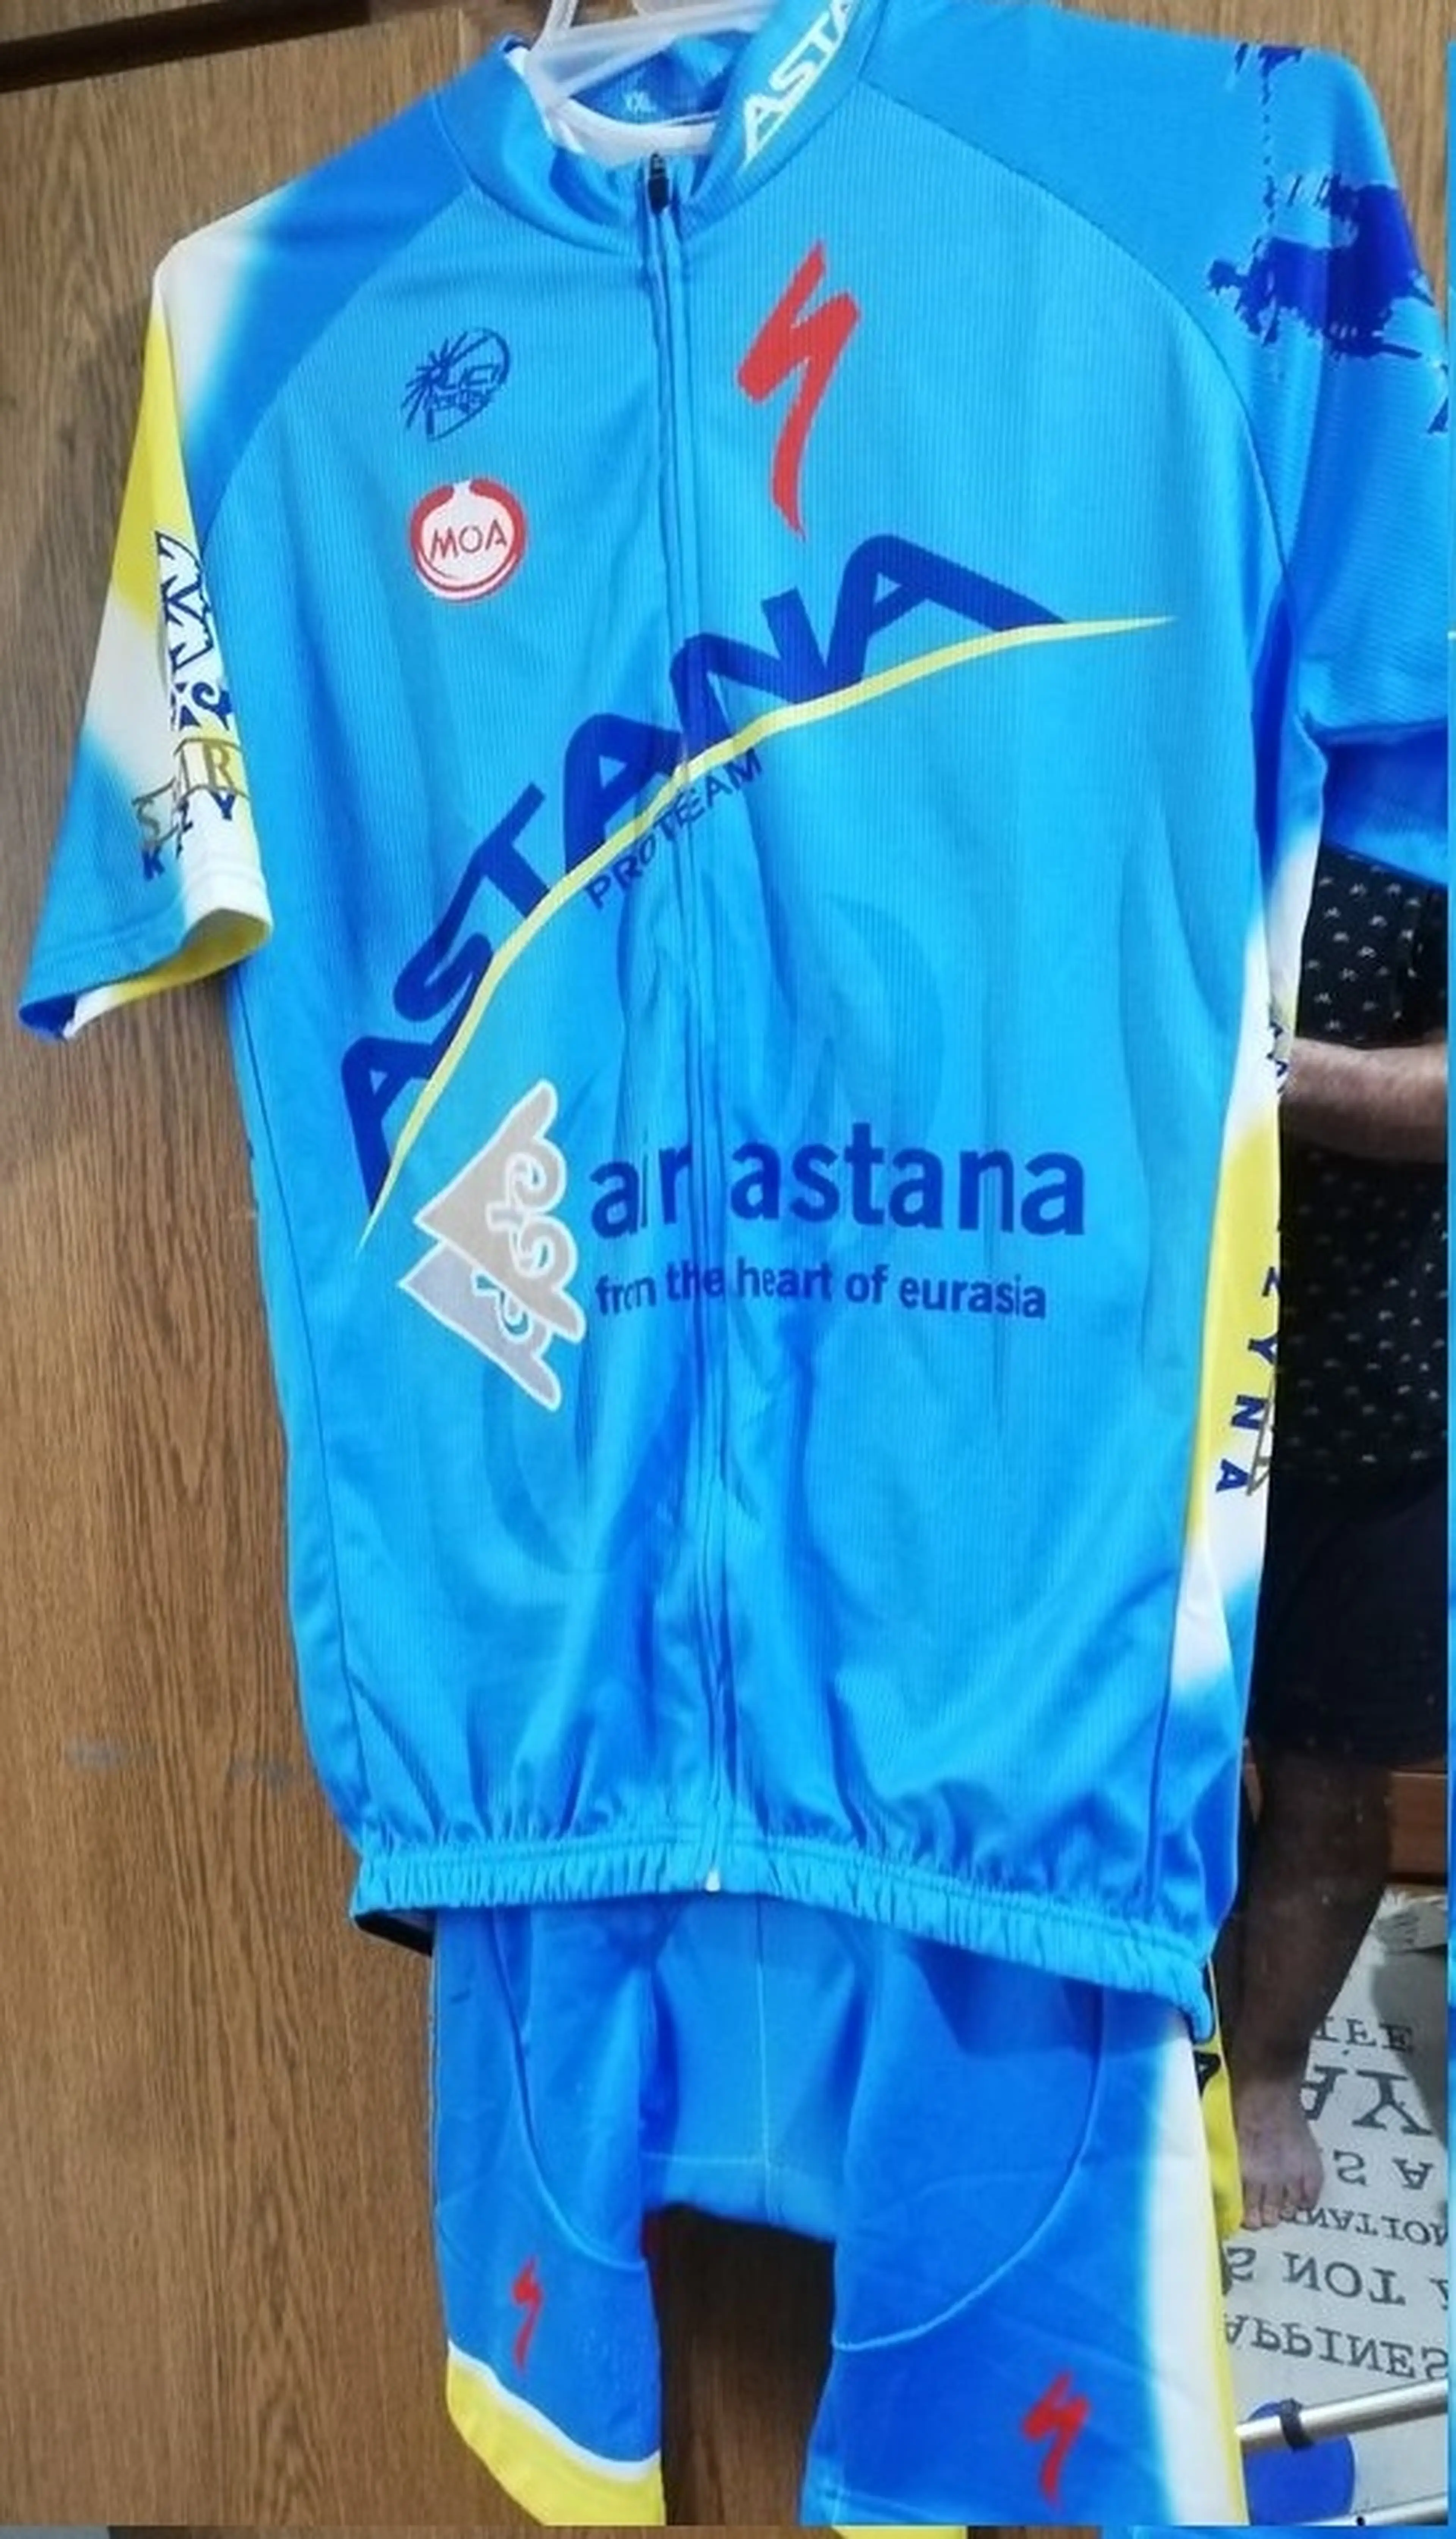 3. Vand echipament team Astana